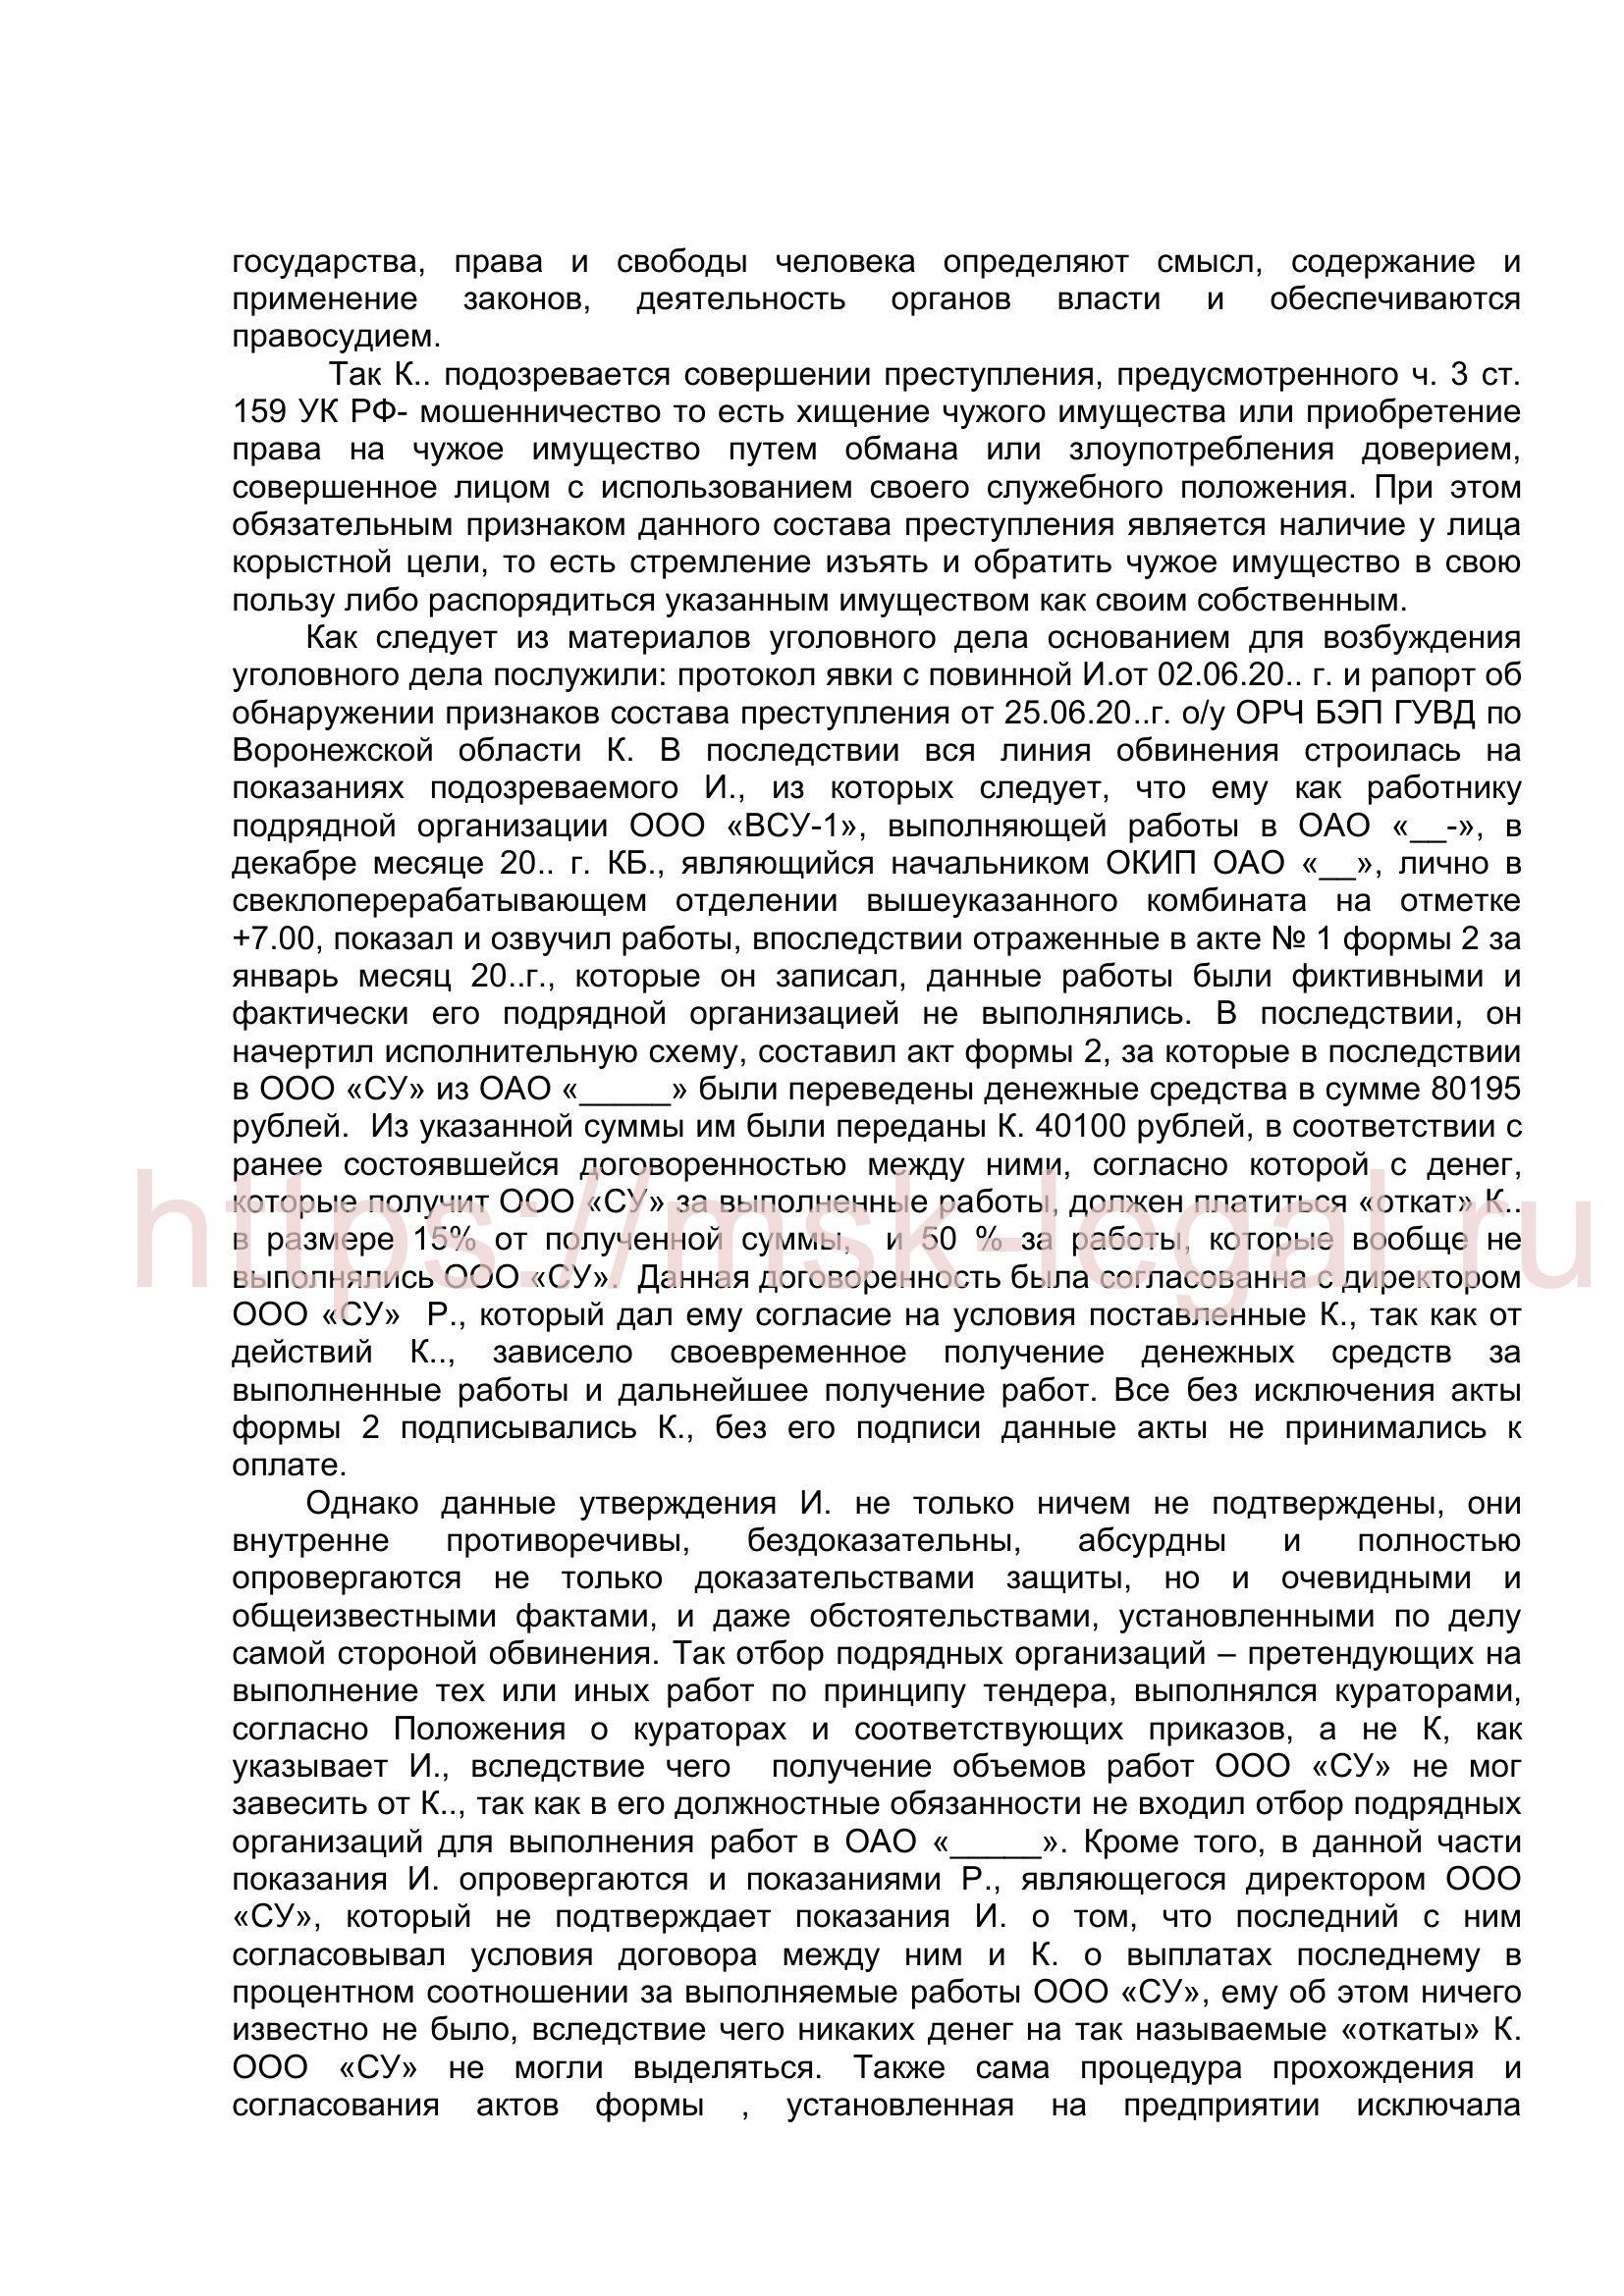 Ходатайство о прекращении уголовного дела по ст. 159 УК РФ на основании п. 1 ч. 1 ст. 27 УПК РФ